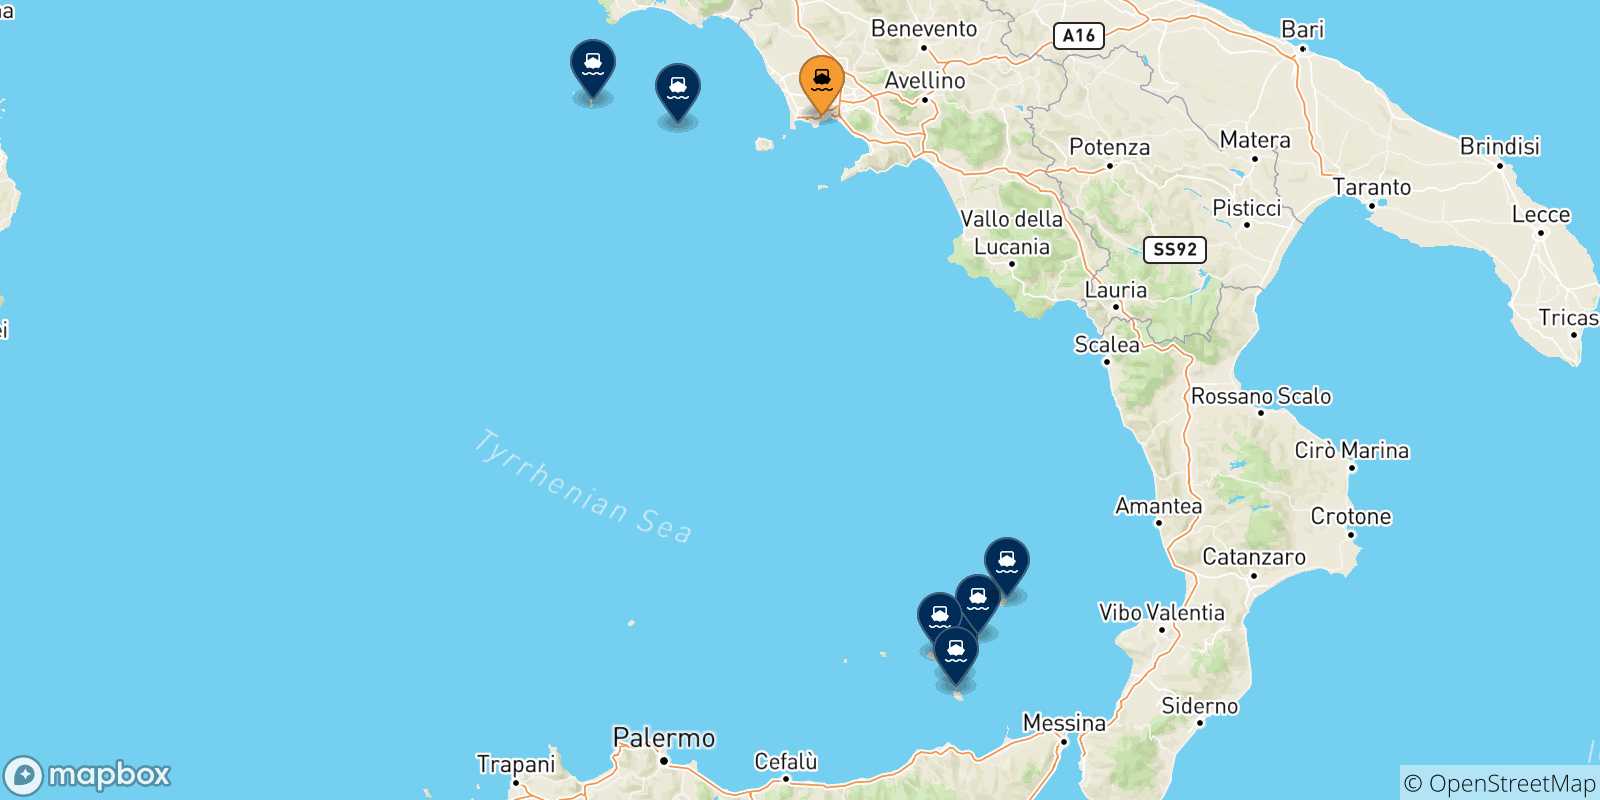 Mappa delle possibili rotte tra Napoli Mergellina e l'Italia